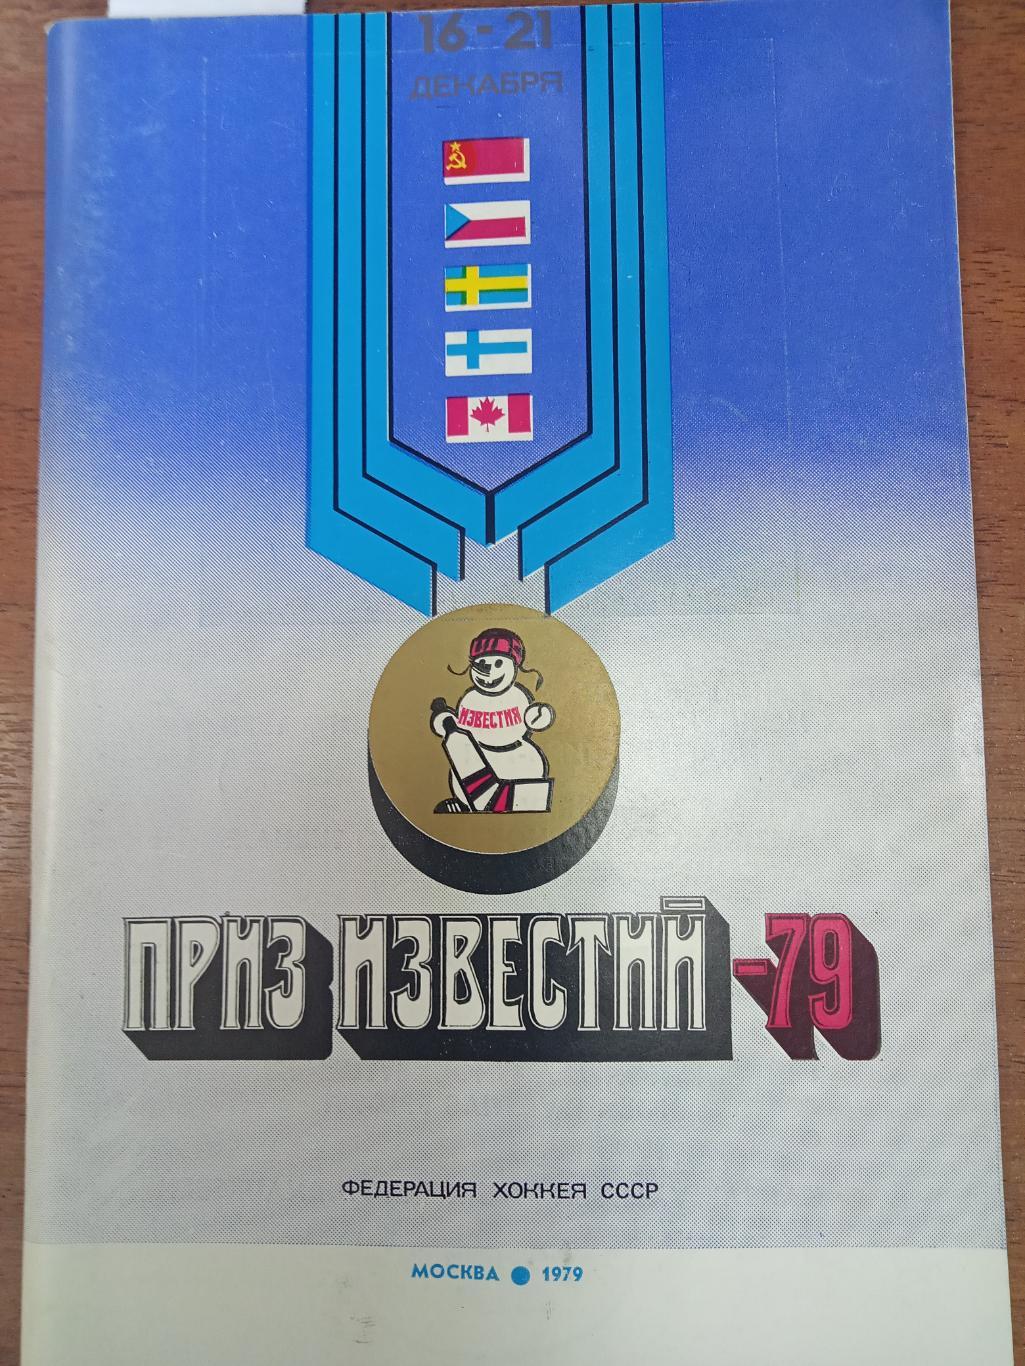 Хоккей. Календарь справочник. ИЗВЕСТИЯ. Москва 1979.